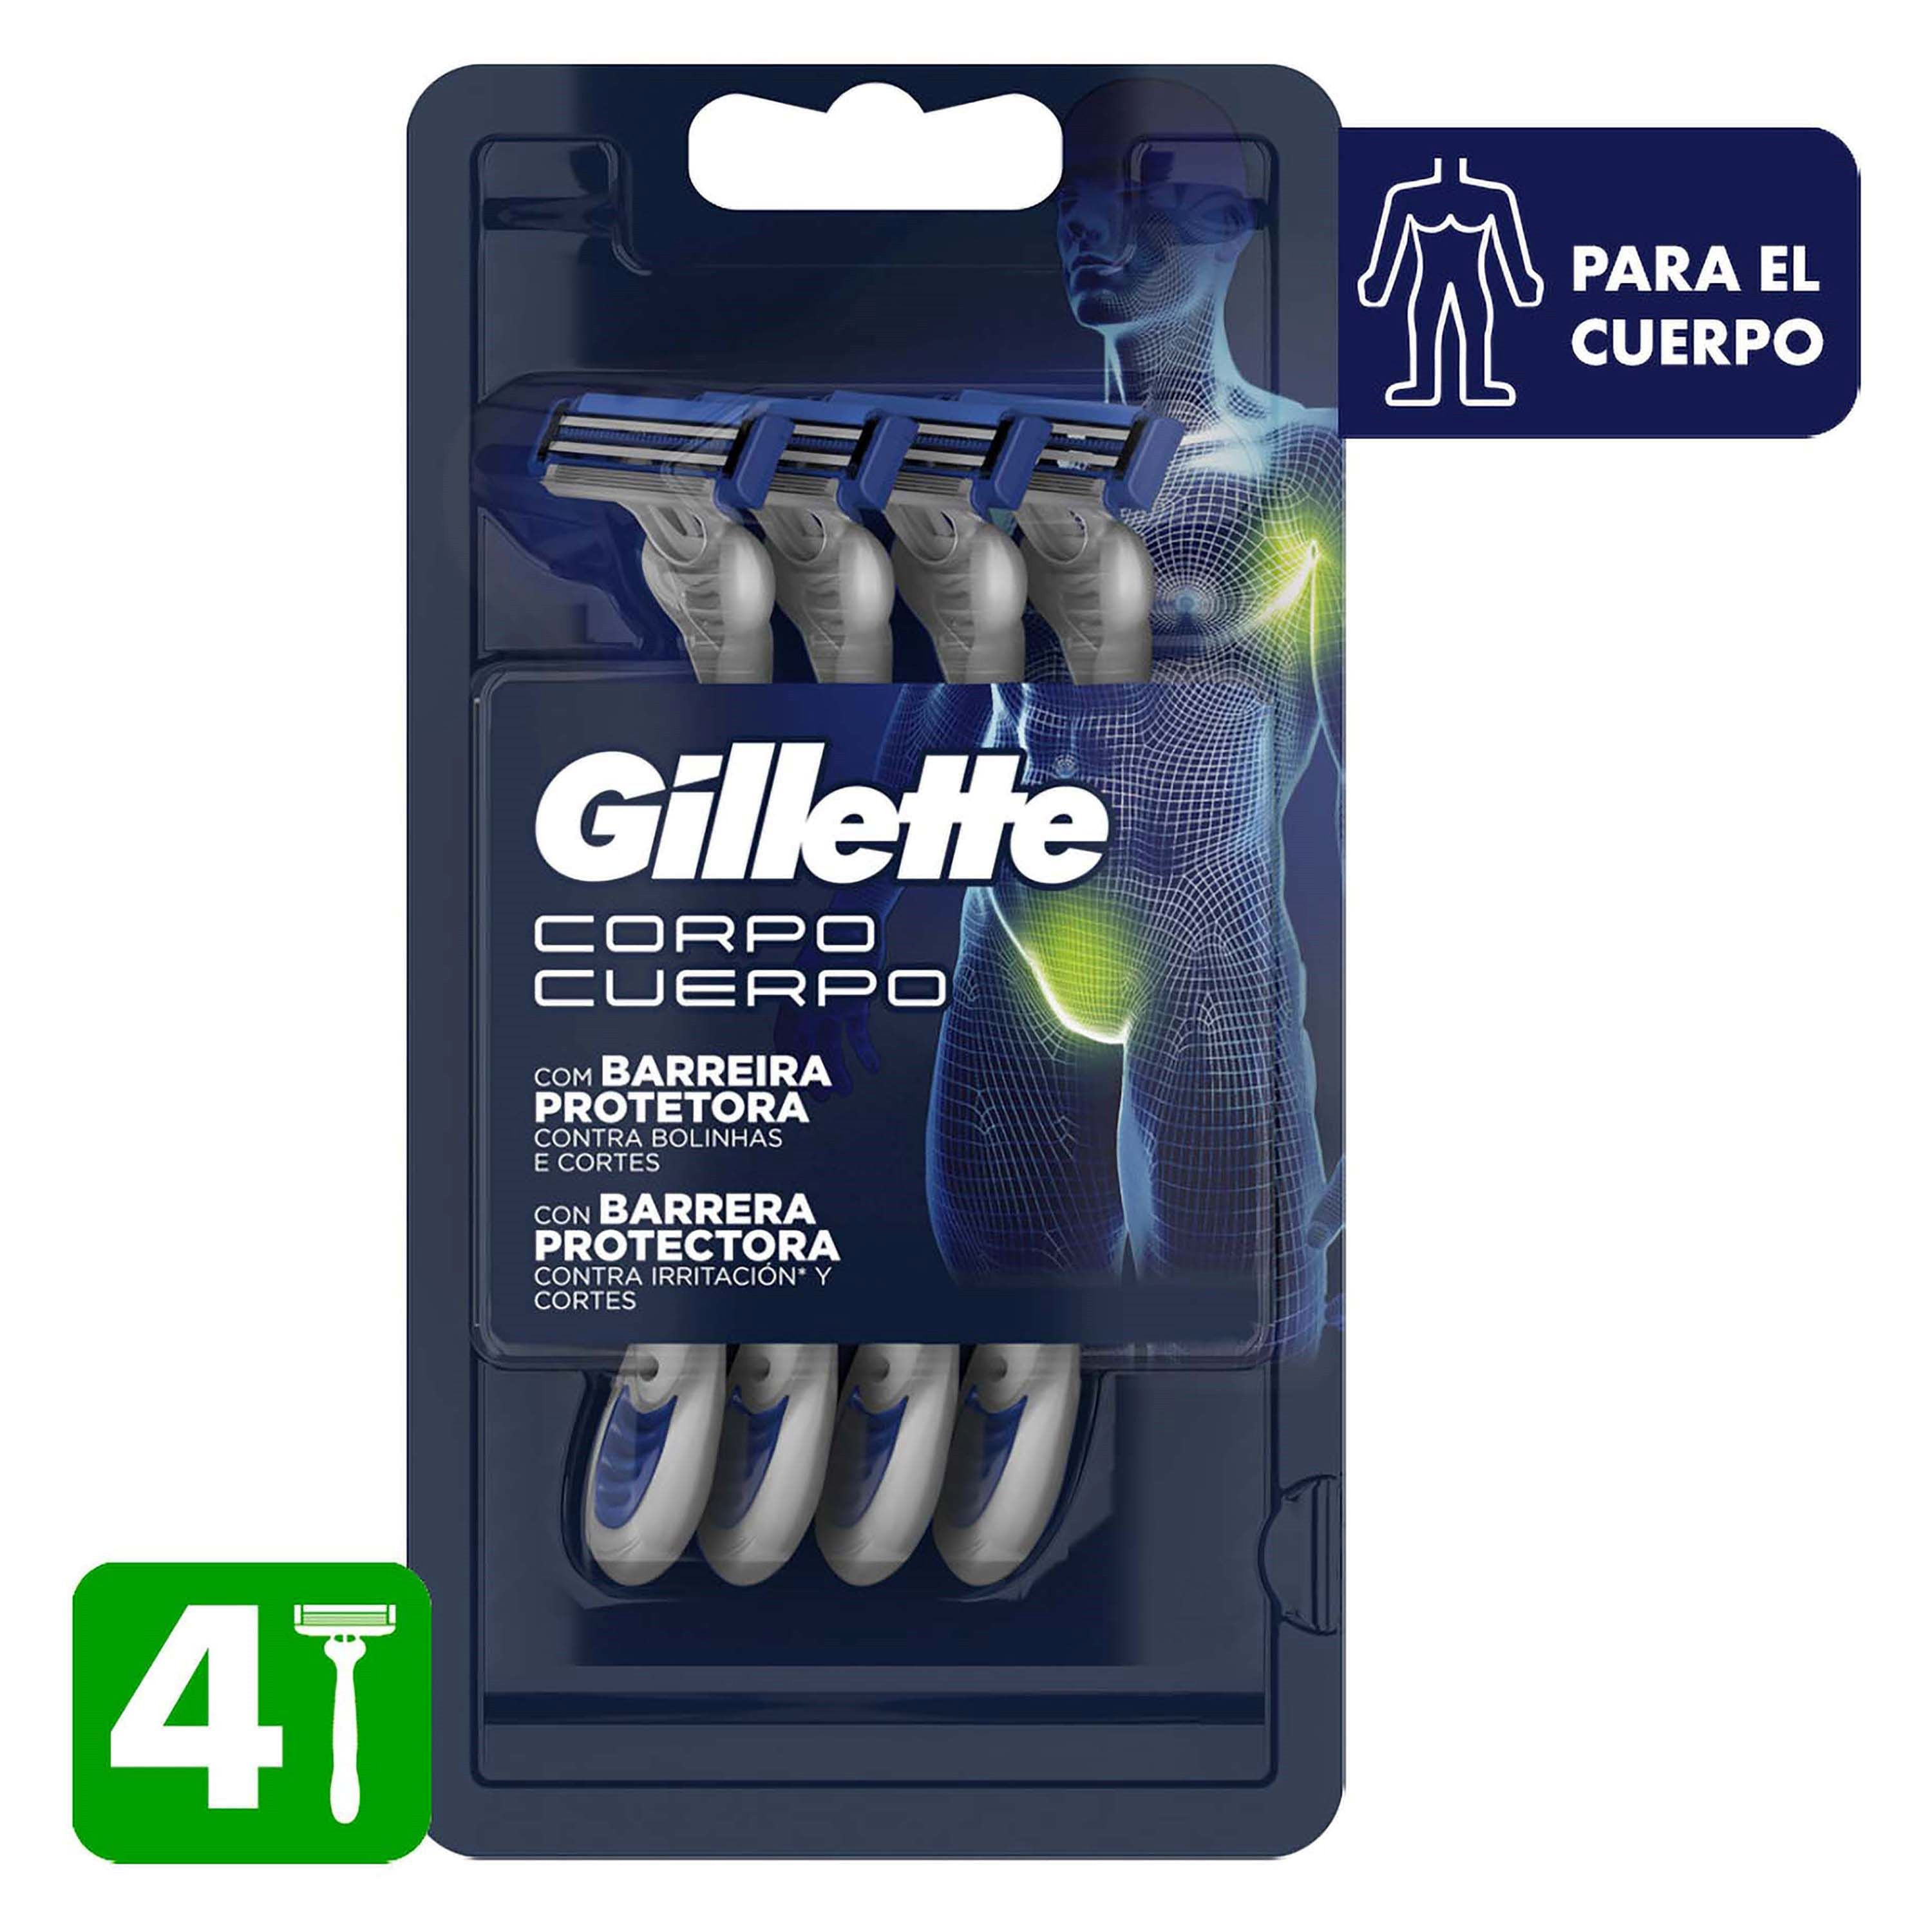 Comprar Máquinas De Afeitar Gillette Desechables Para El Cuerpo - 4Uds